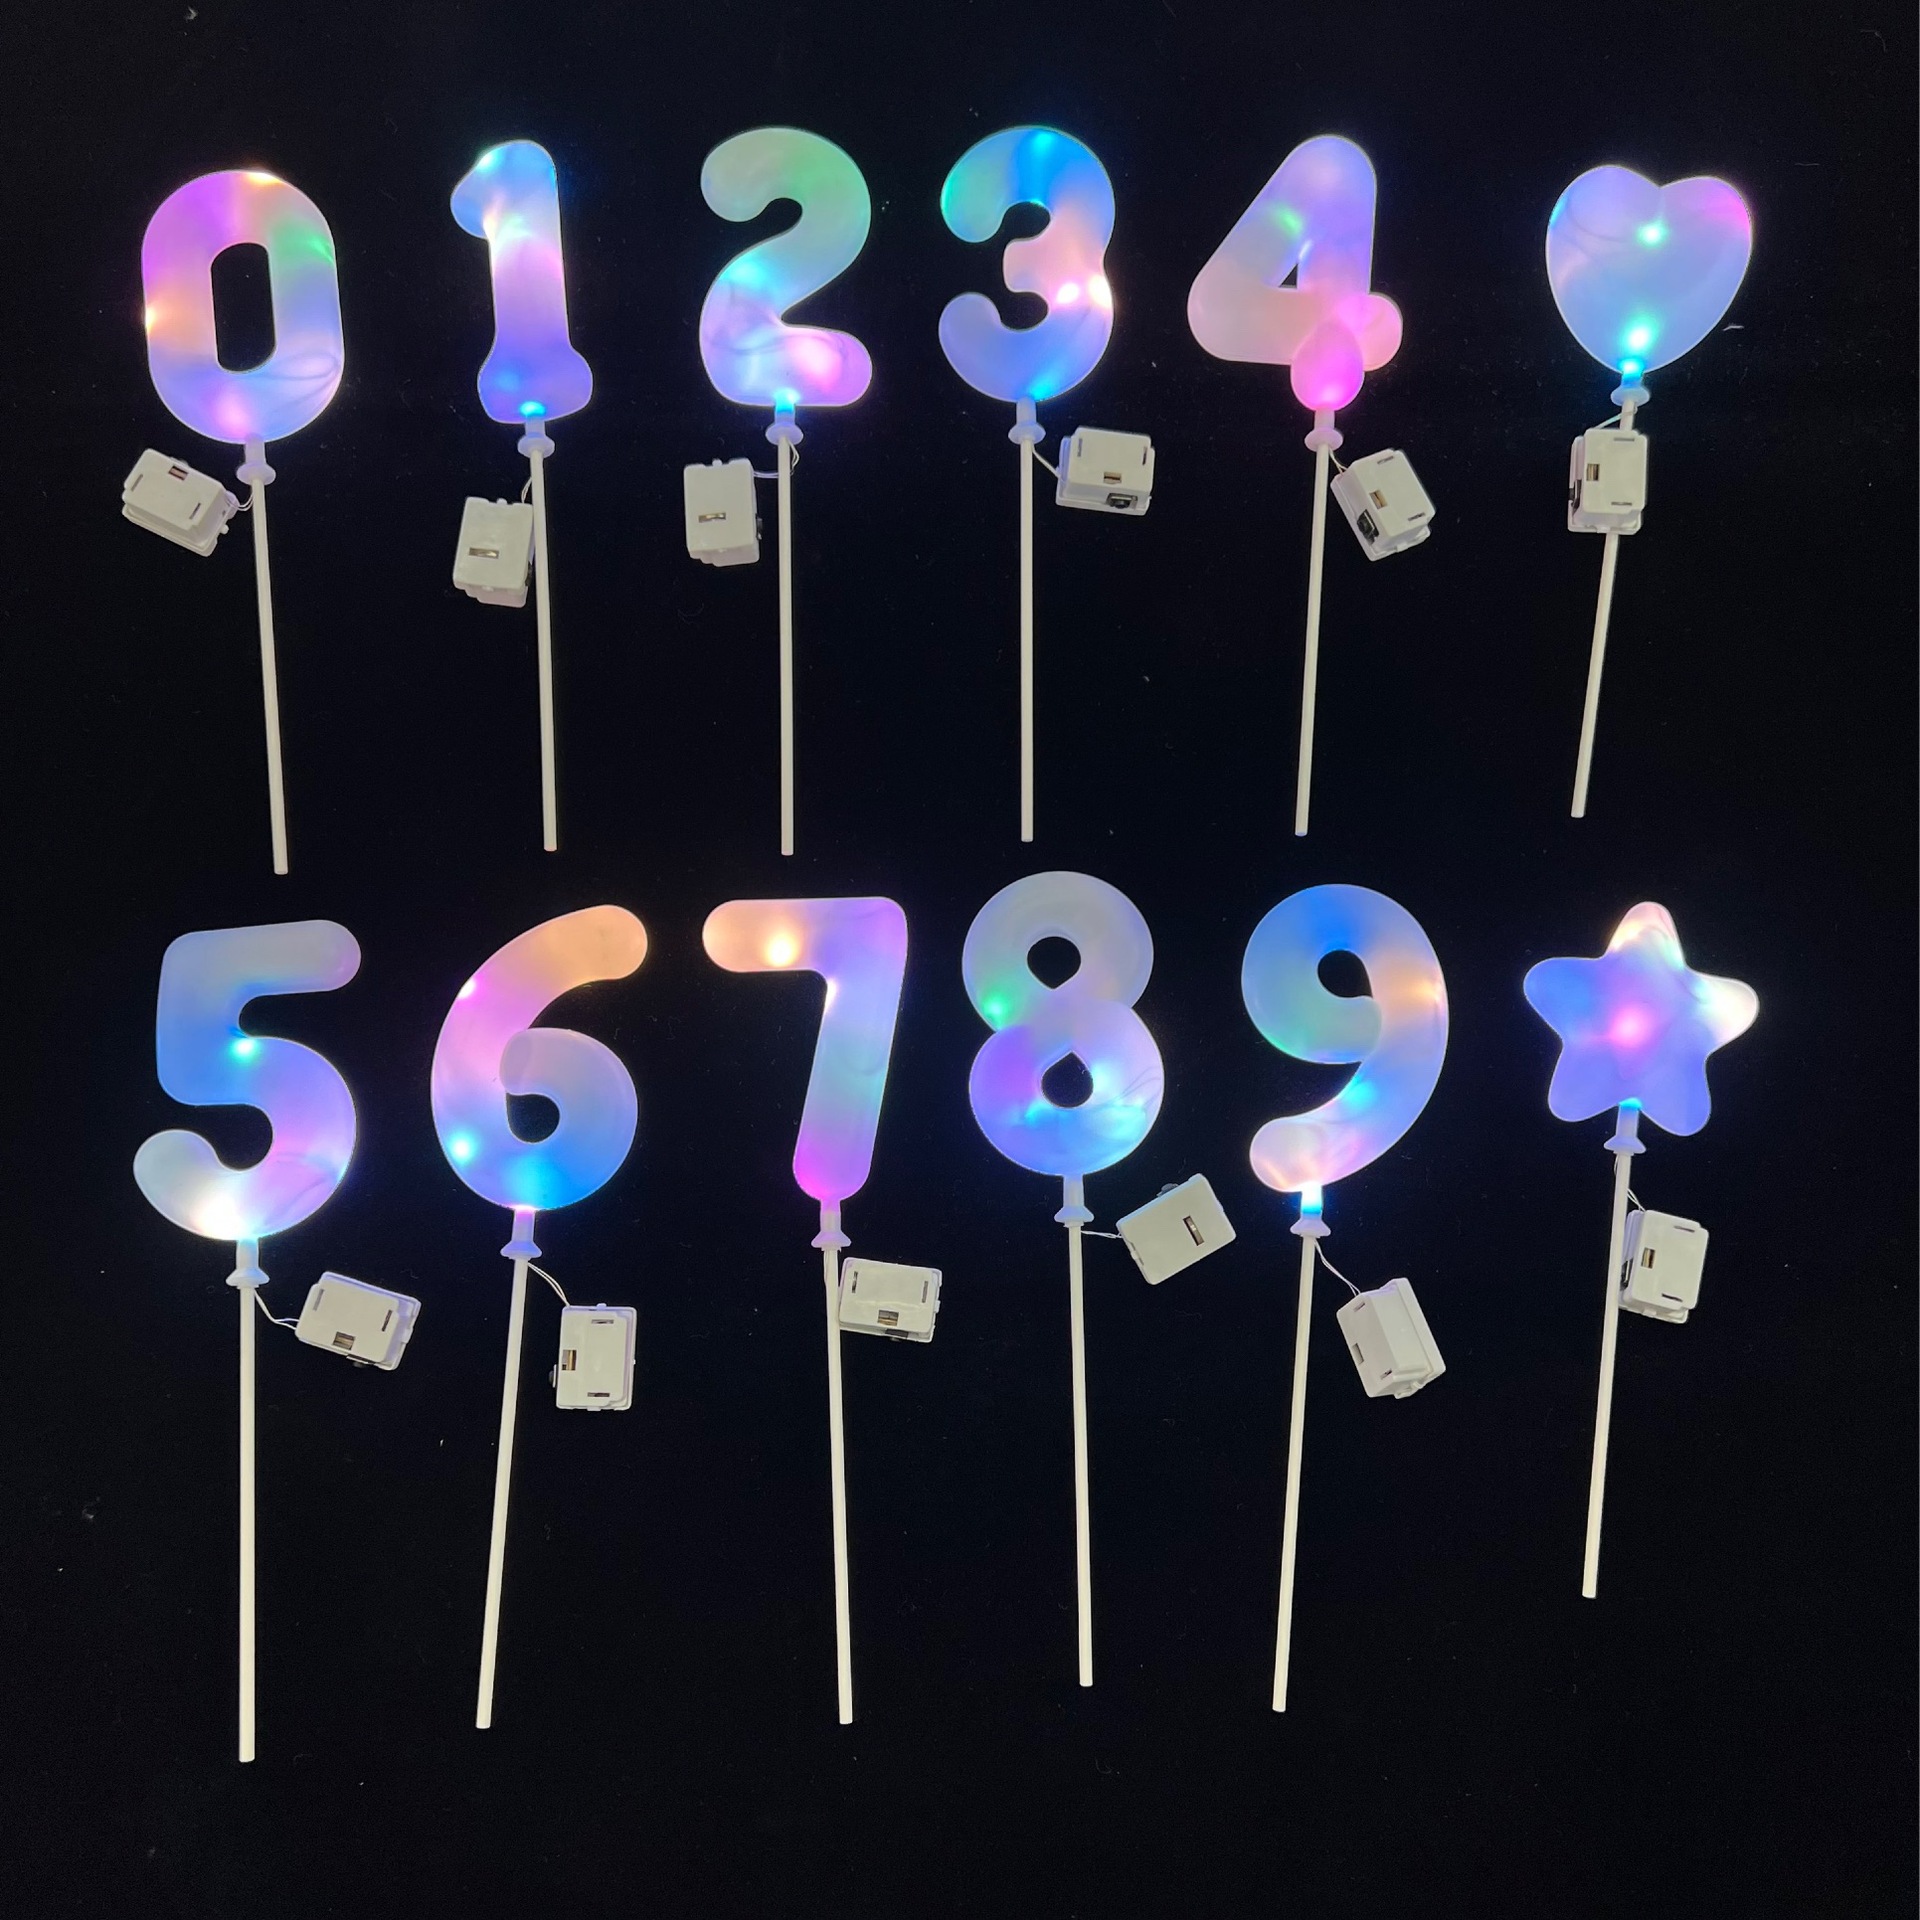 亚马逊生日蛋糕装饰 LED带灯数字蛋糕插件 烘焙甜品装扮花束装扮详情2